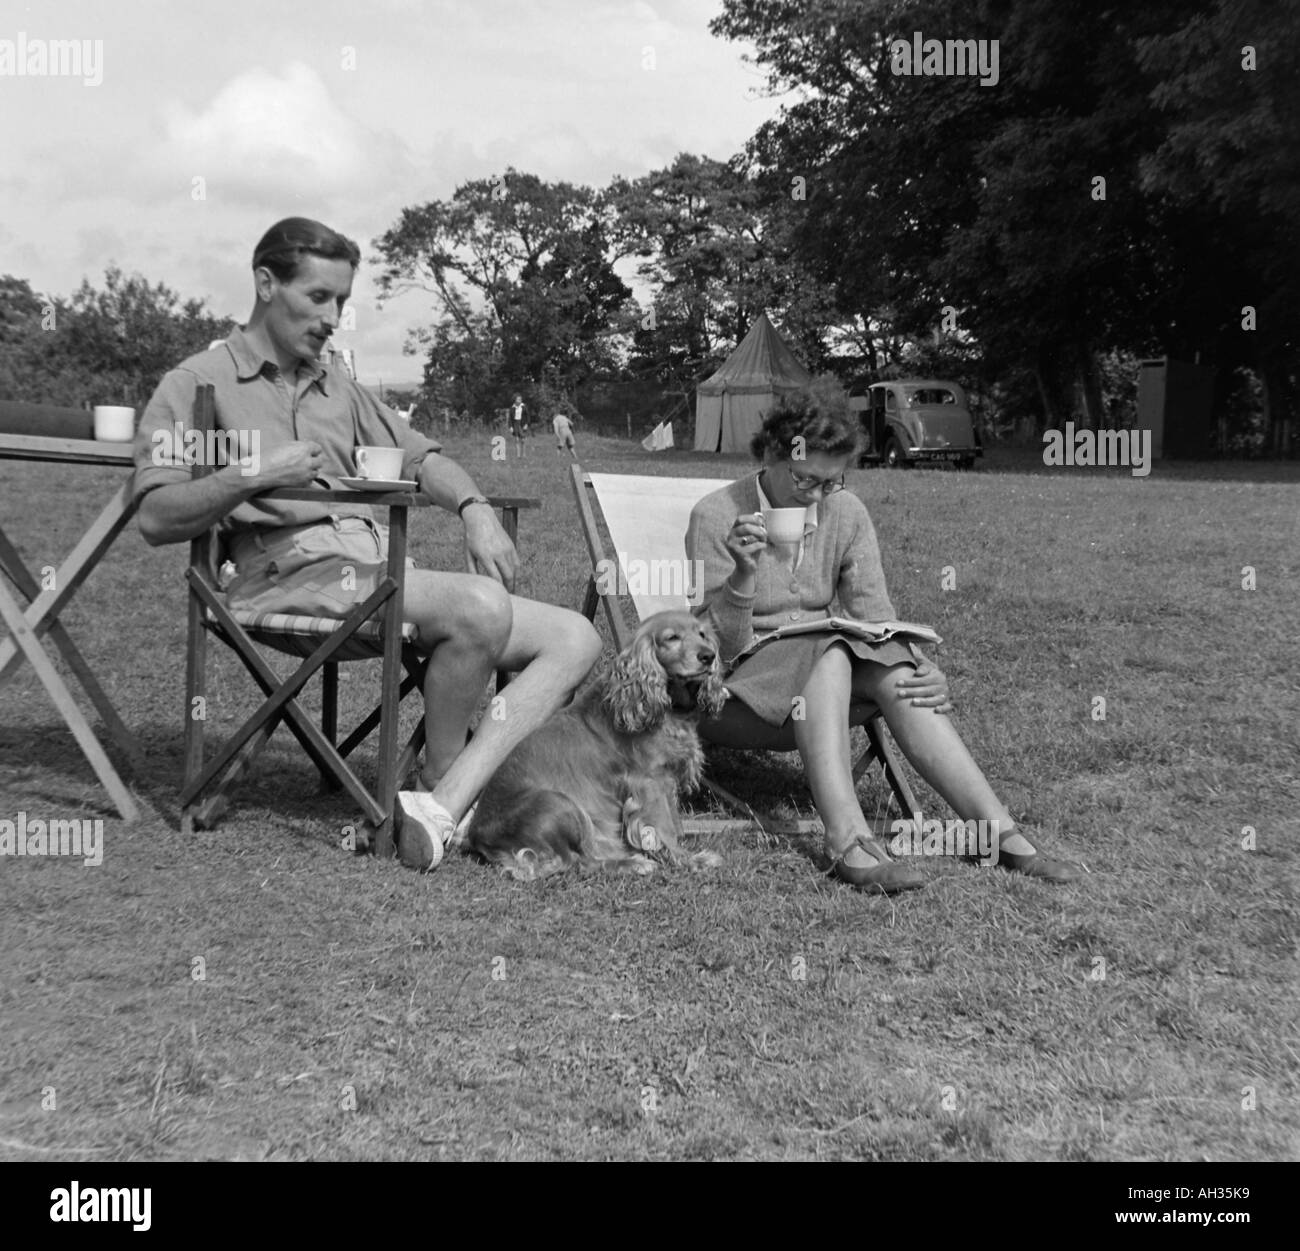 OLD VINTAGE PHOTO DE FAMILLE DE SNAP SHOT COUPLE ASSIS DANS DES TRANSATS SUR CAMP SITE VERS 1950 Banque D'Images